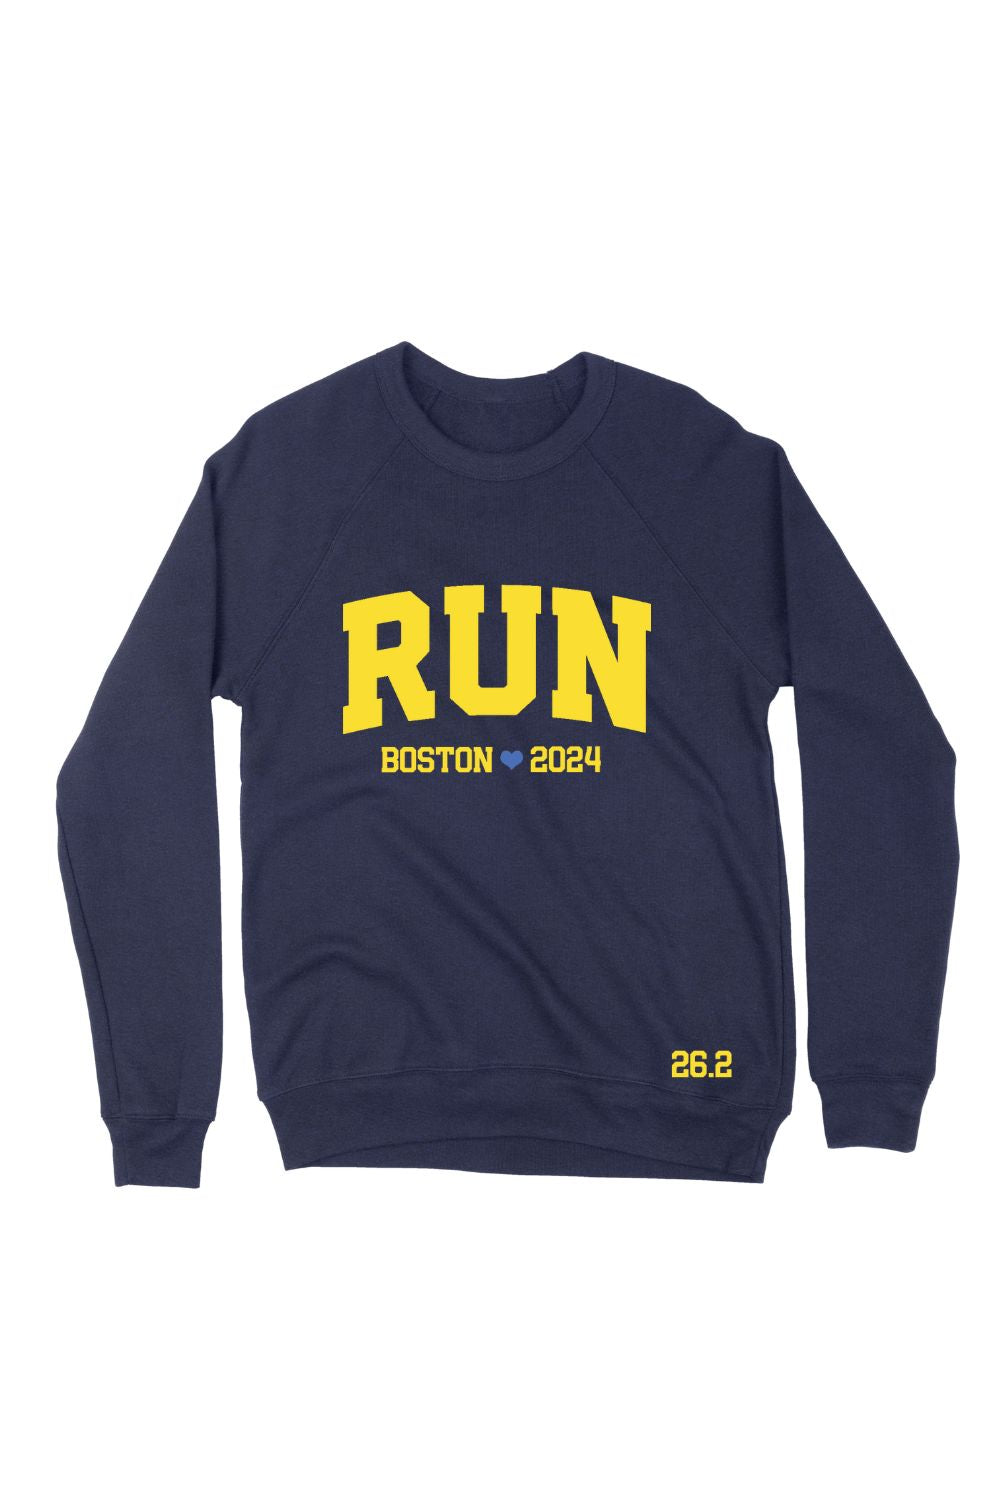 RUN Boston 2024 Sweatshirt